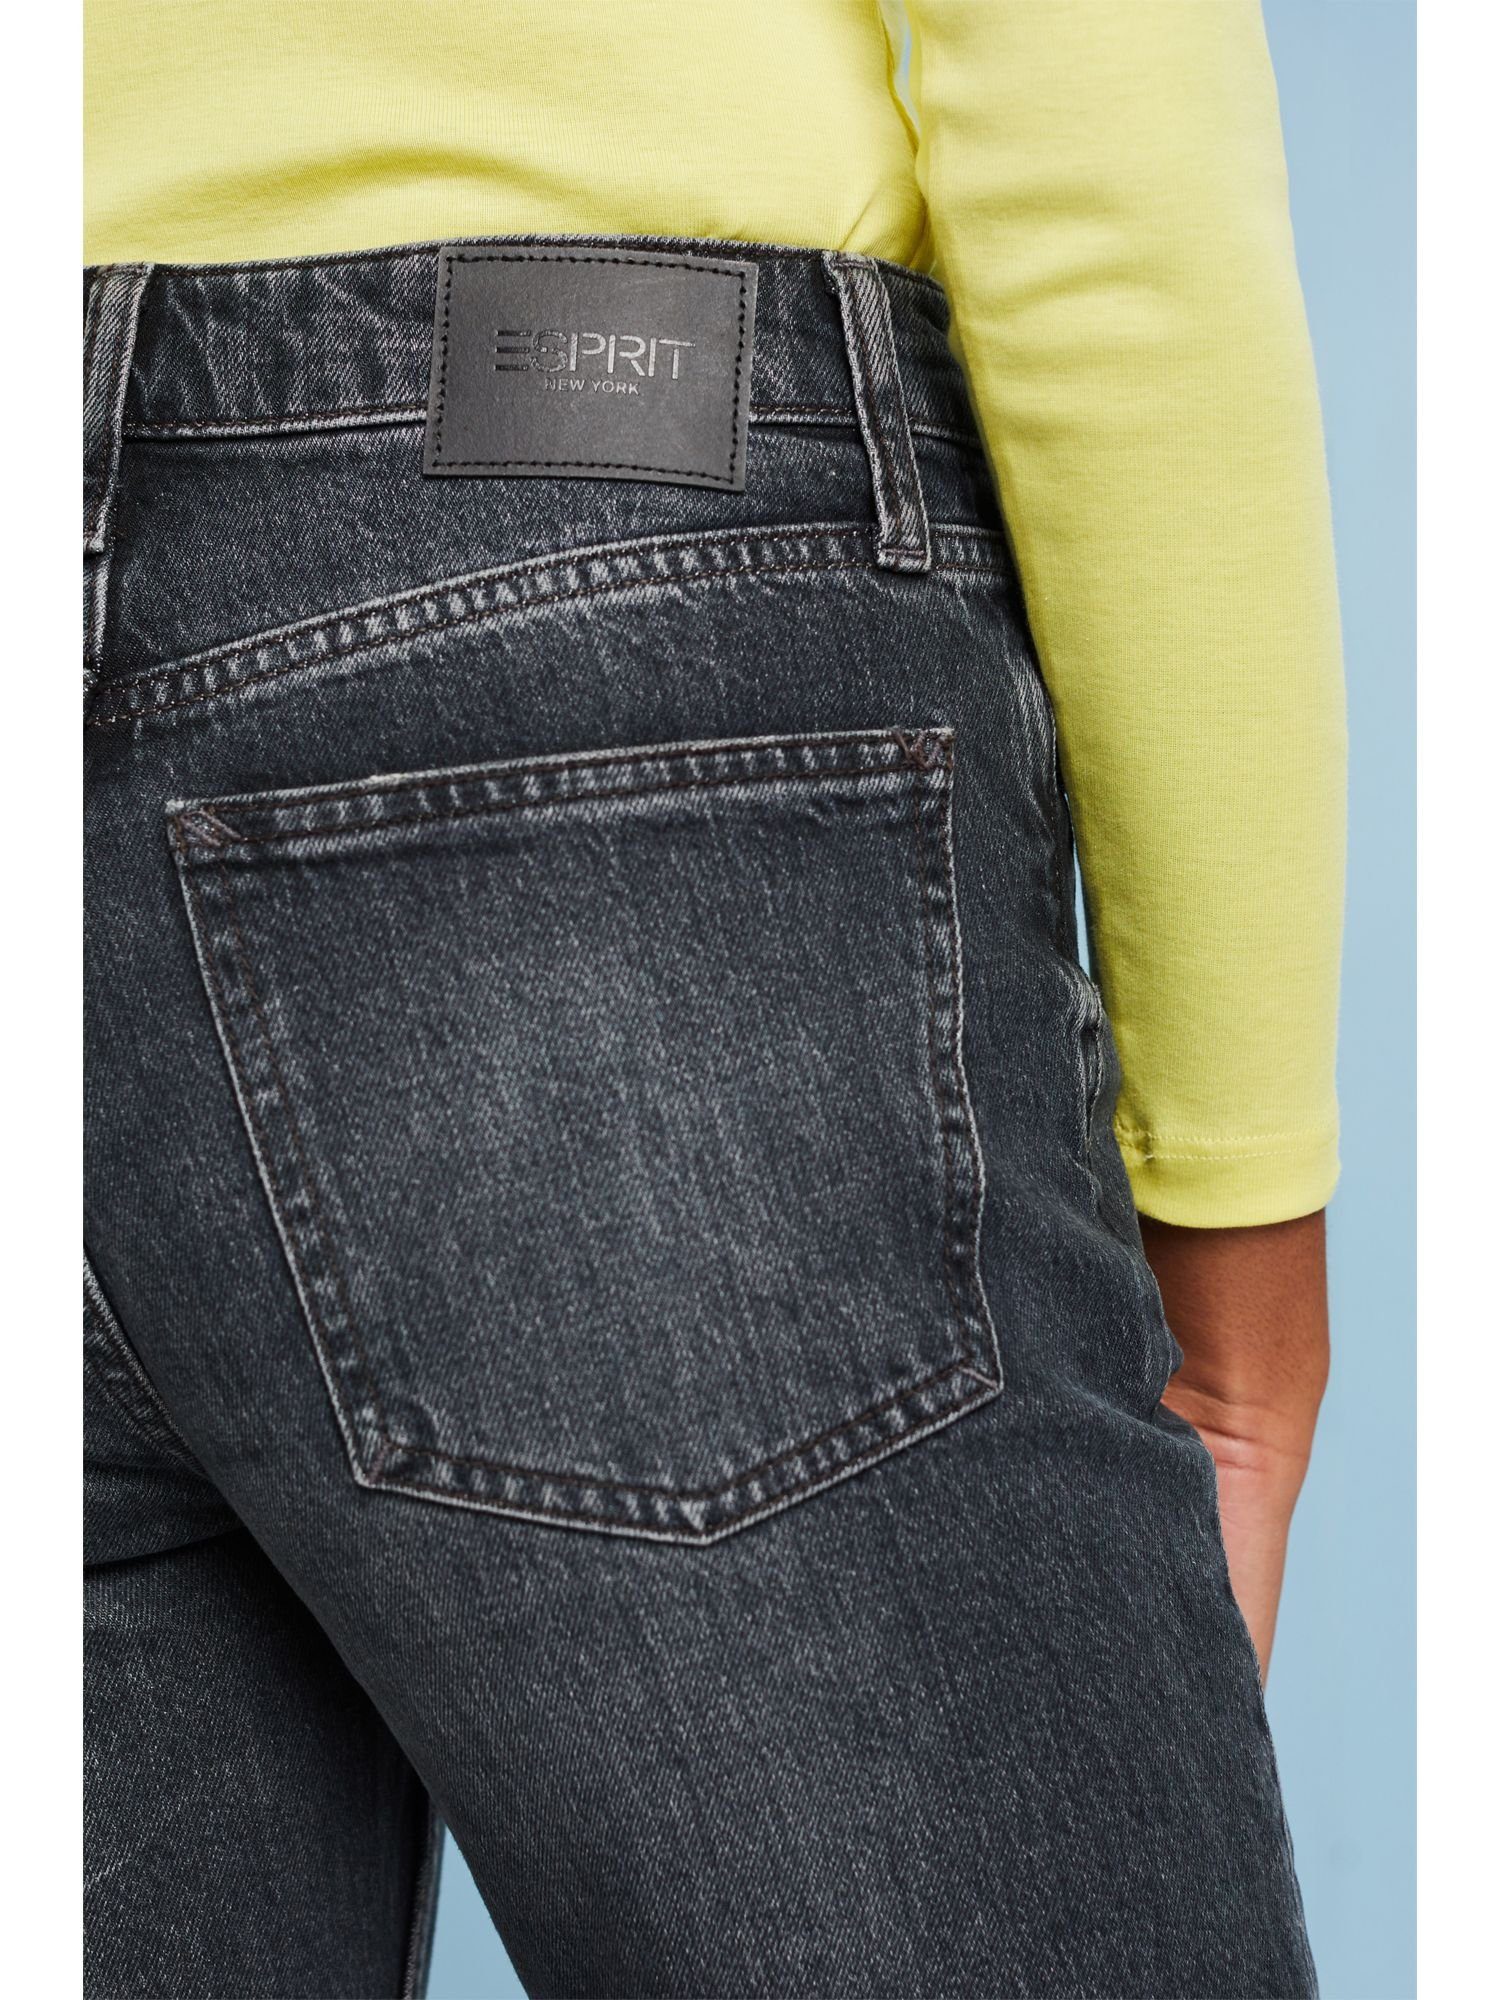 Esprit Bequeme in Jeans Retro-Optik Klassische Jeans